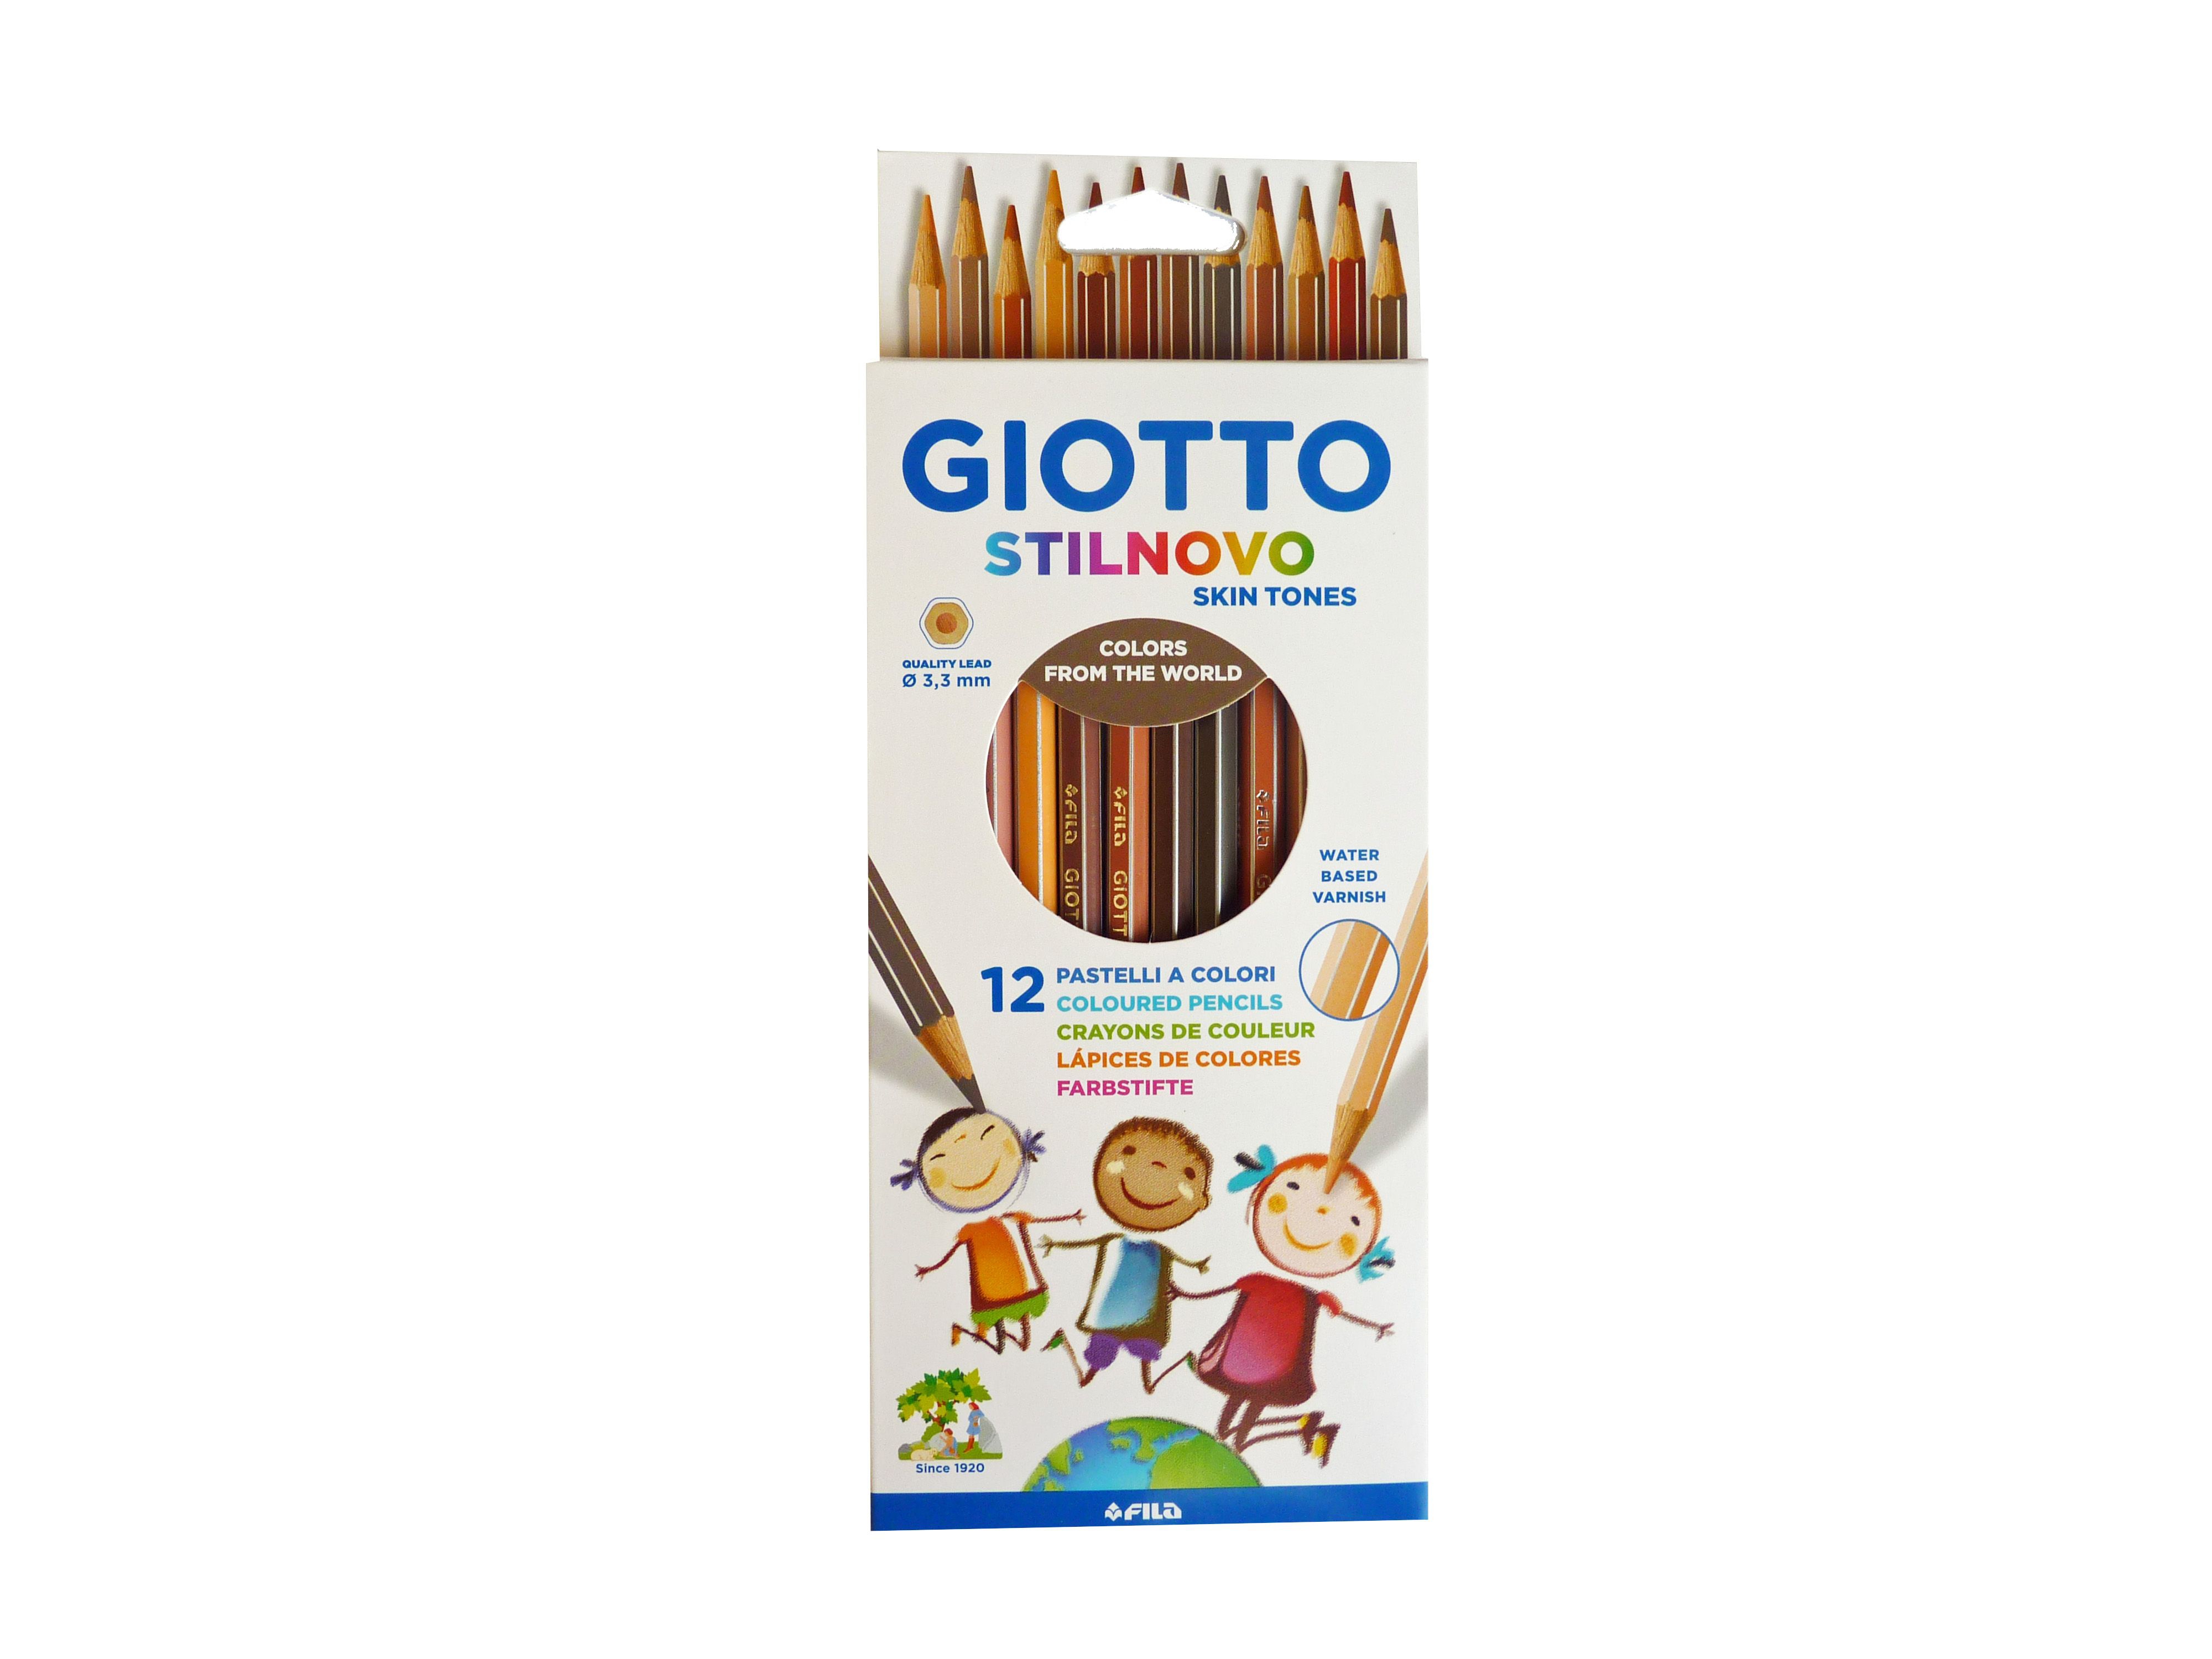 Farbstifte Giotto Stilnovo Skin Tones